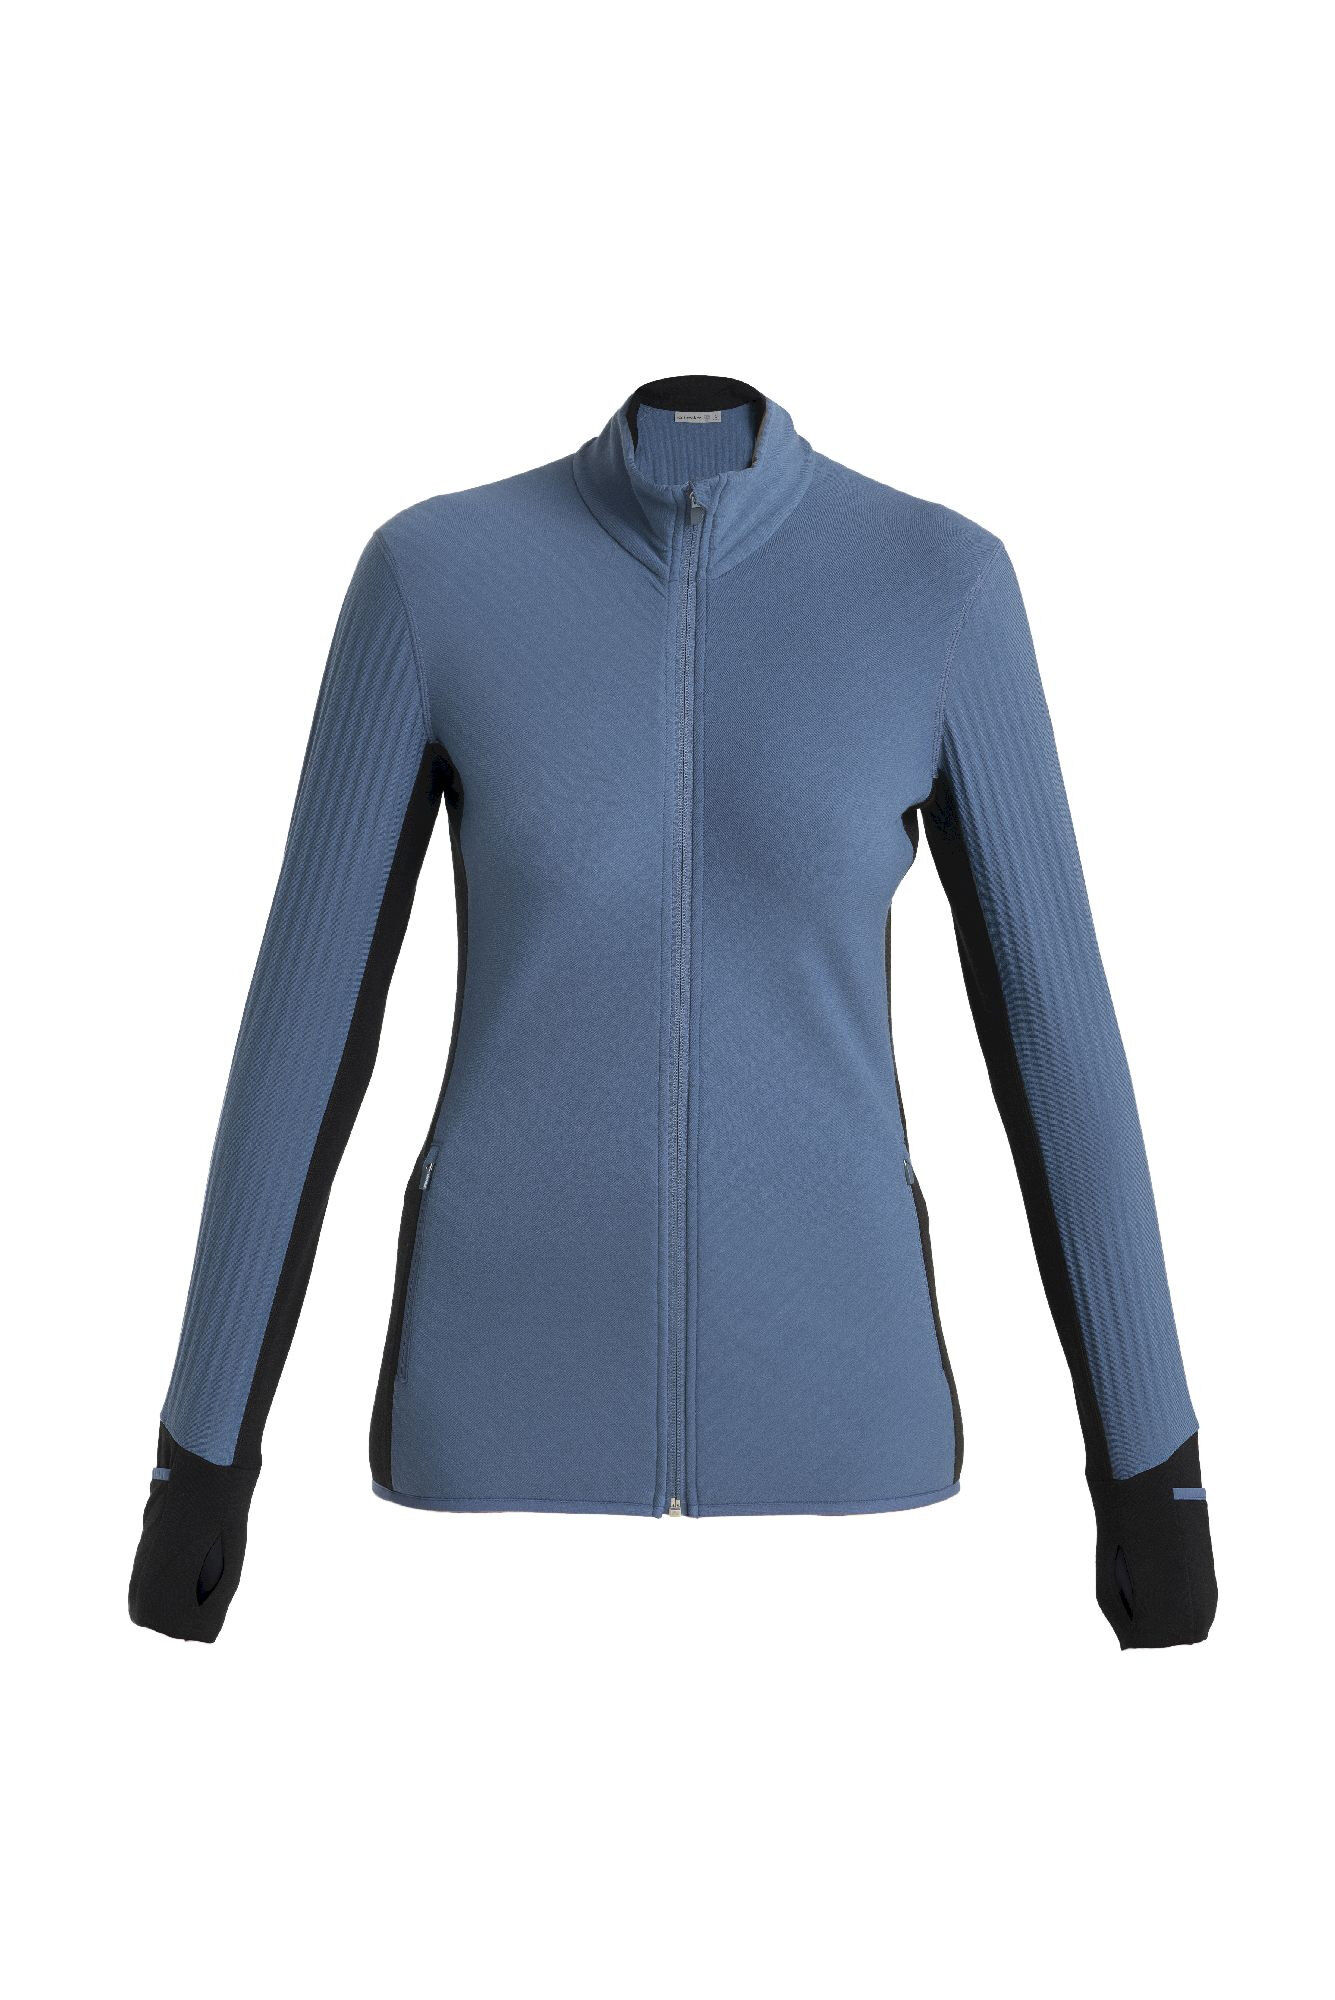 Icebreaker Descender LS Zip - Merino Fleece jacket - Women's I Hardloop